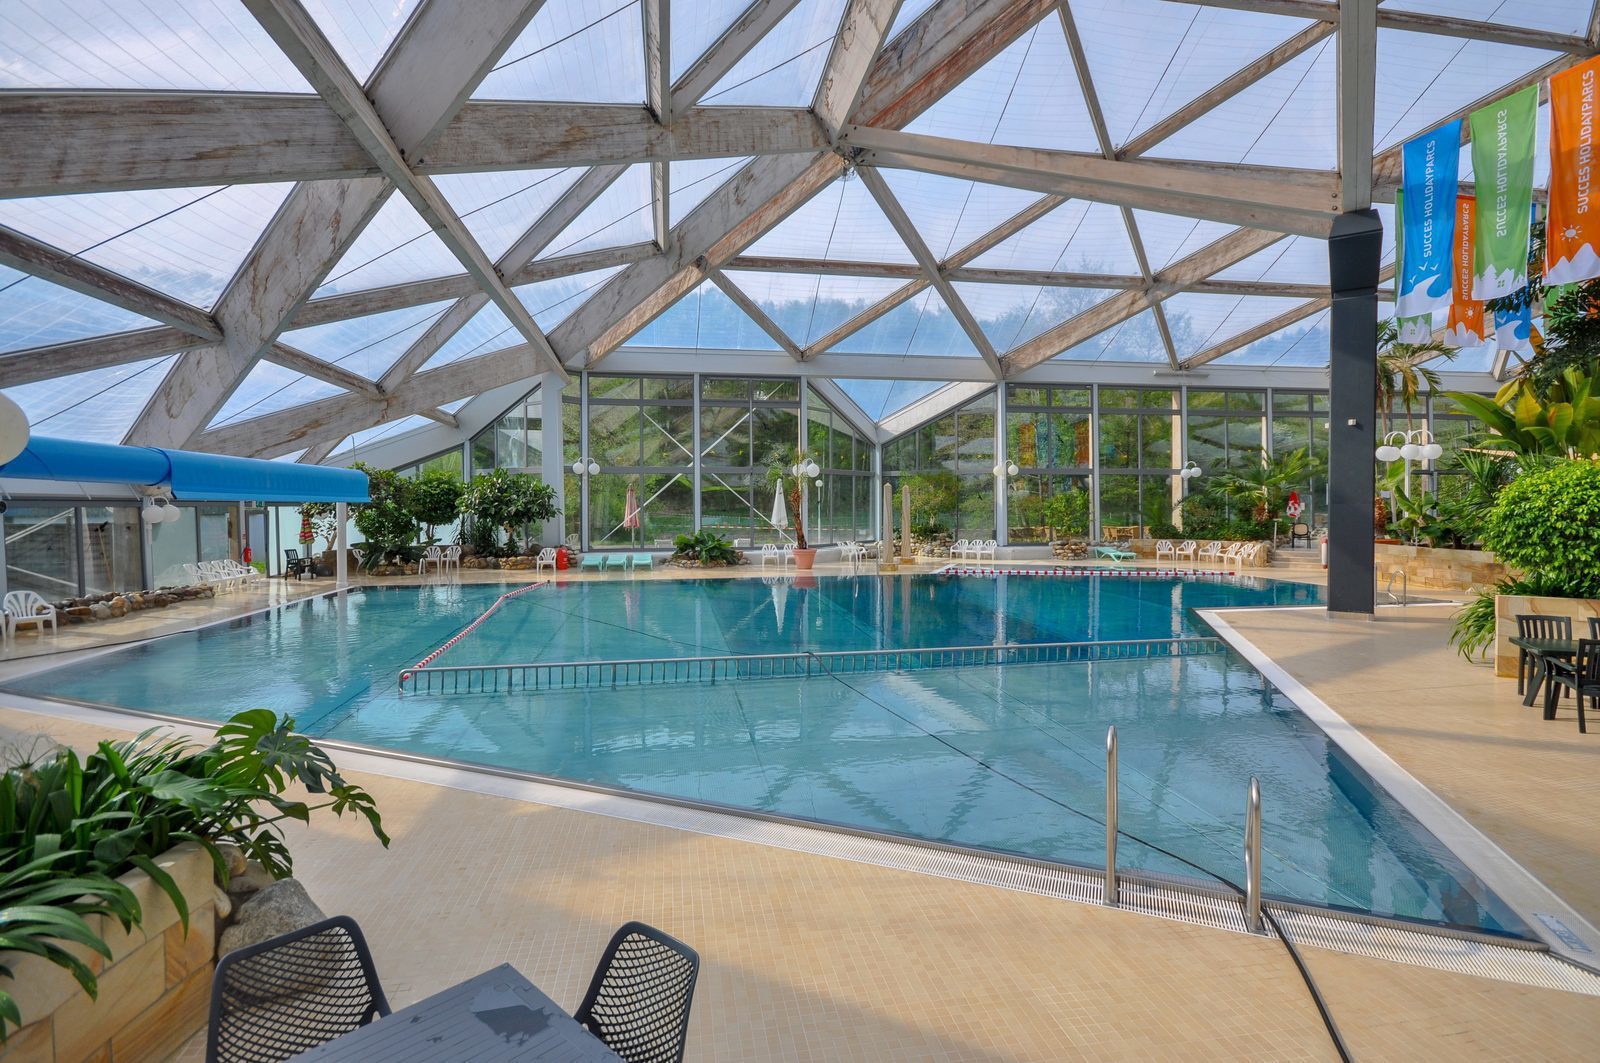 Vakantiepark in Duitsland met zwembad